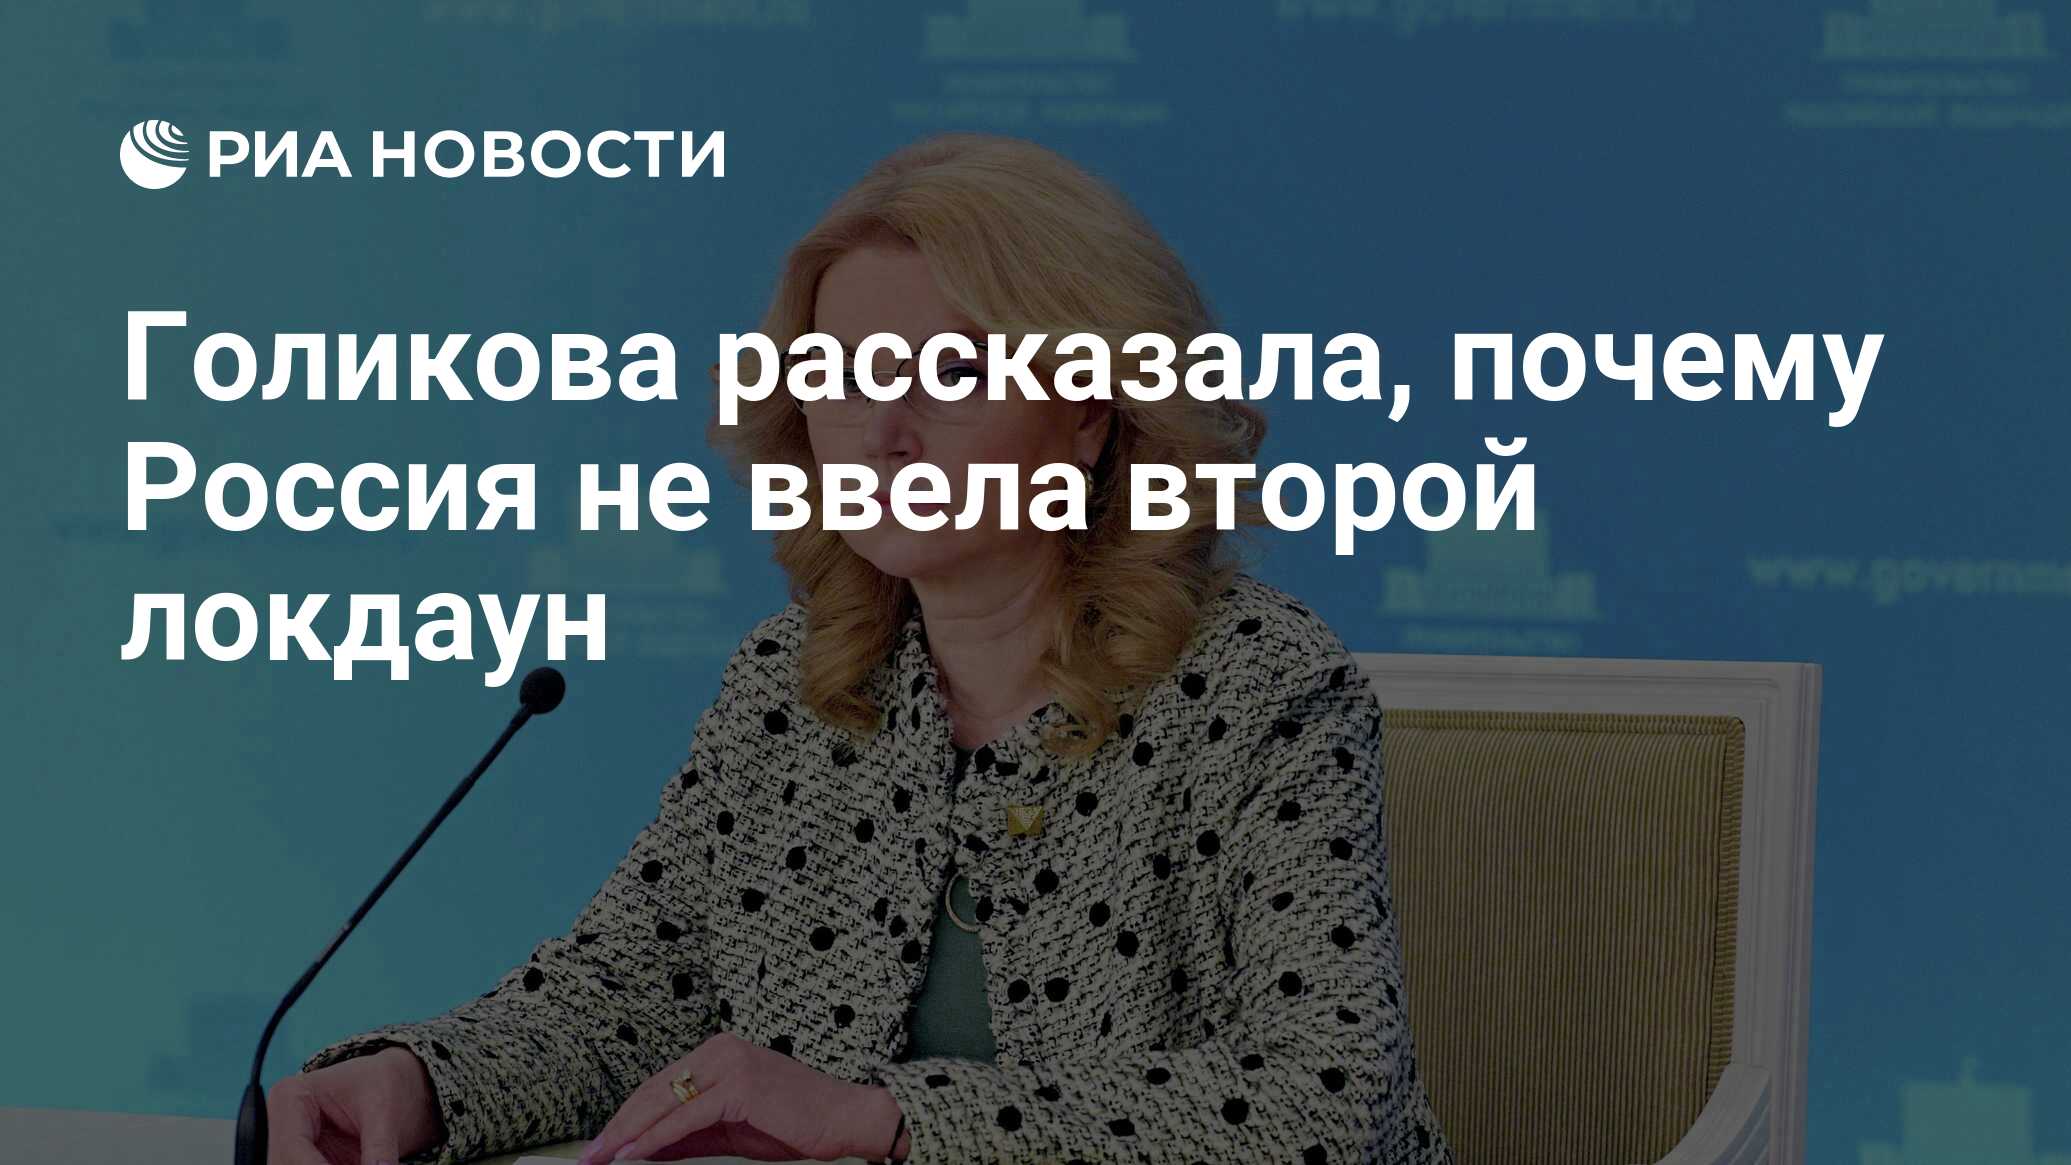 Голикова рассказала, почему Россия не ввела второй локдаун